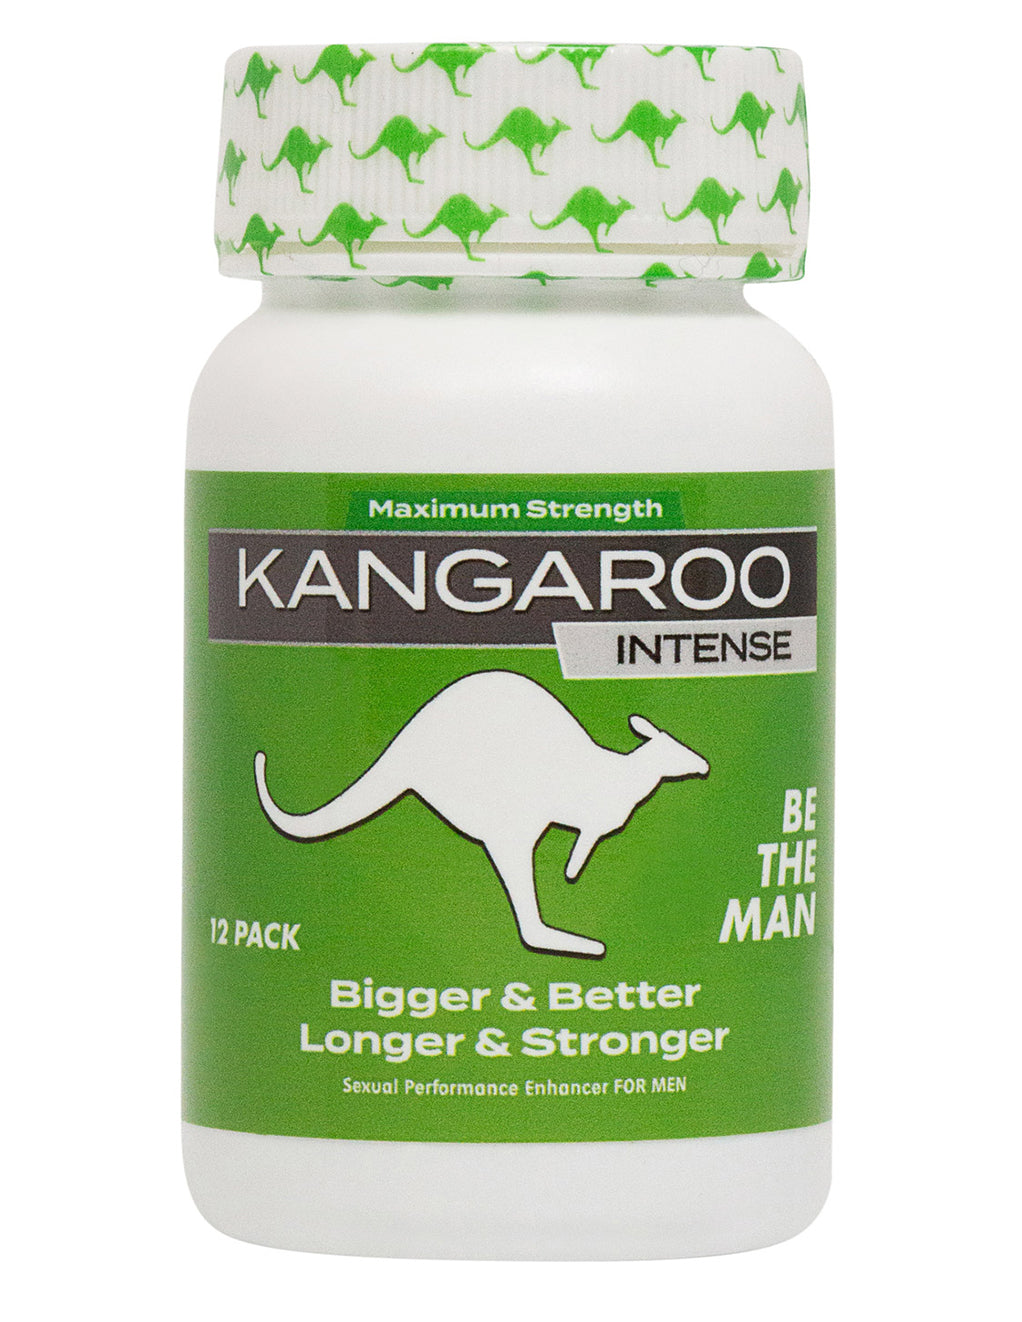 Kangaroo Green Max Strength Personal Care at Hustler Hollywood photo pic